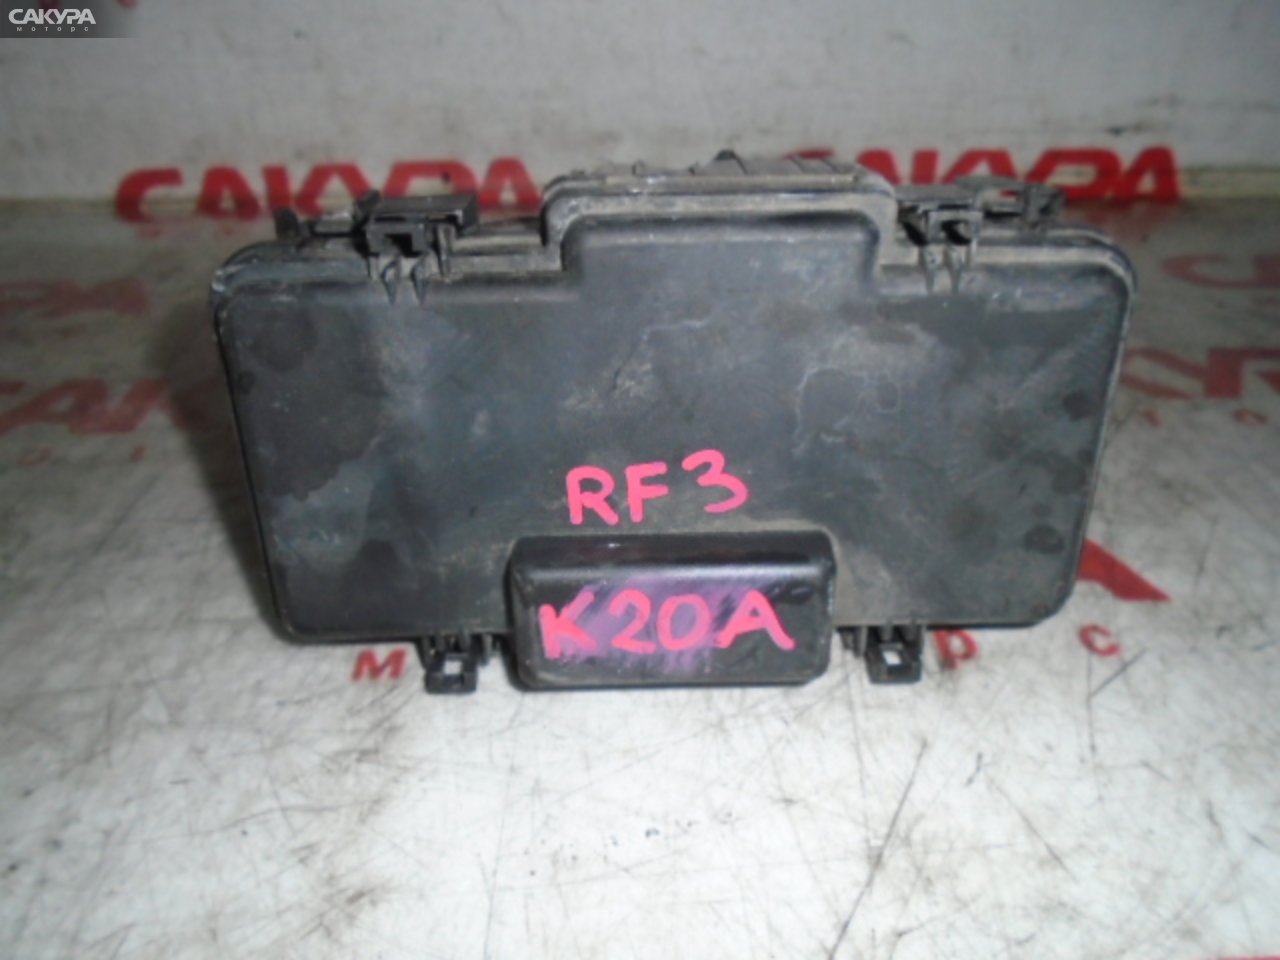 Блок реле и предохранителей Honda Stepwgn RF3 K20A: купить в Сакура Моторс Кемерово.